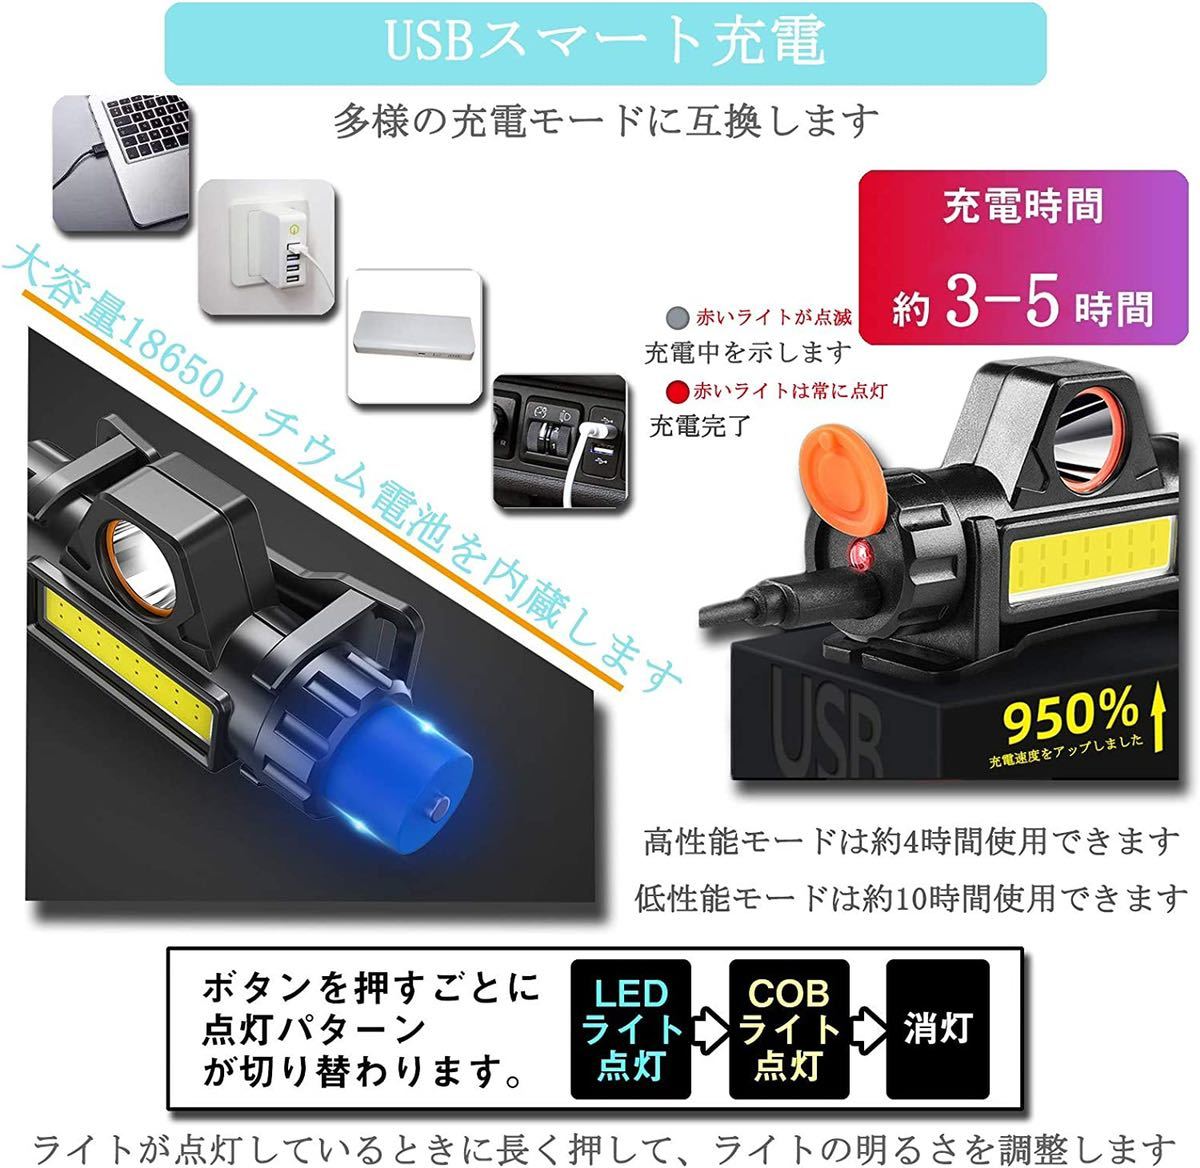 ヘッドライト 充電式 2個セット COB LEDヘッドライト USB 高輝度 300